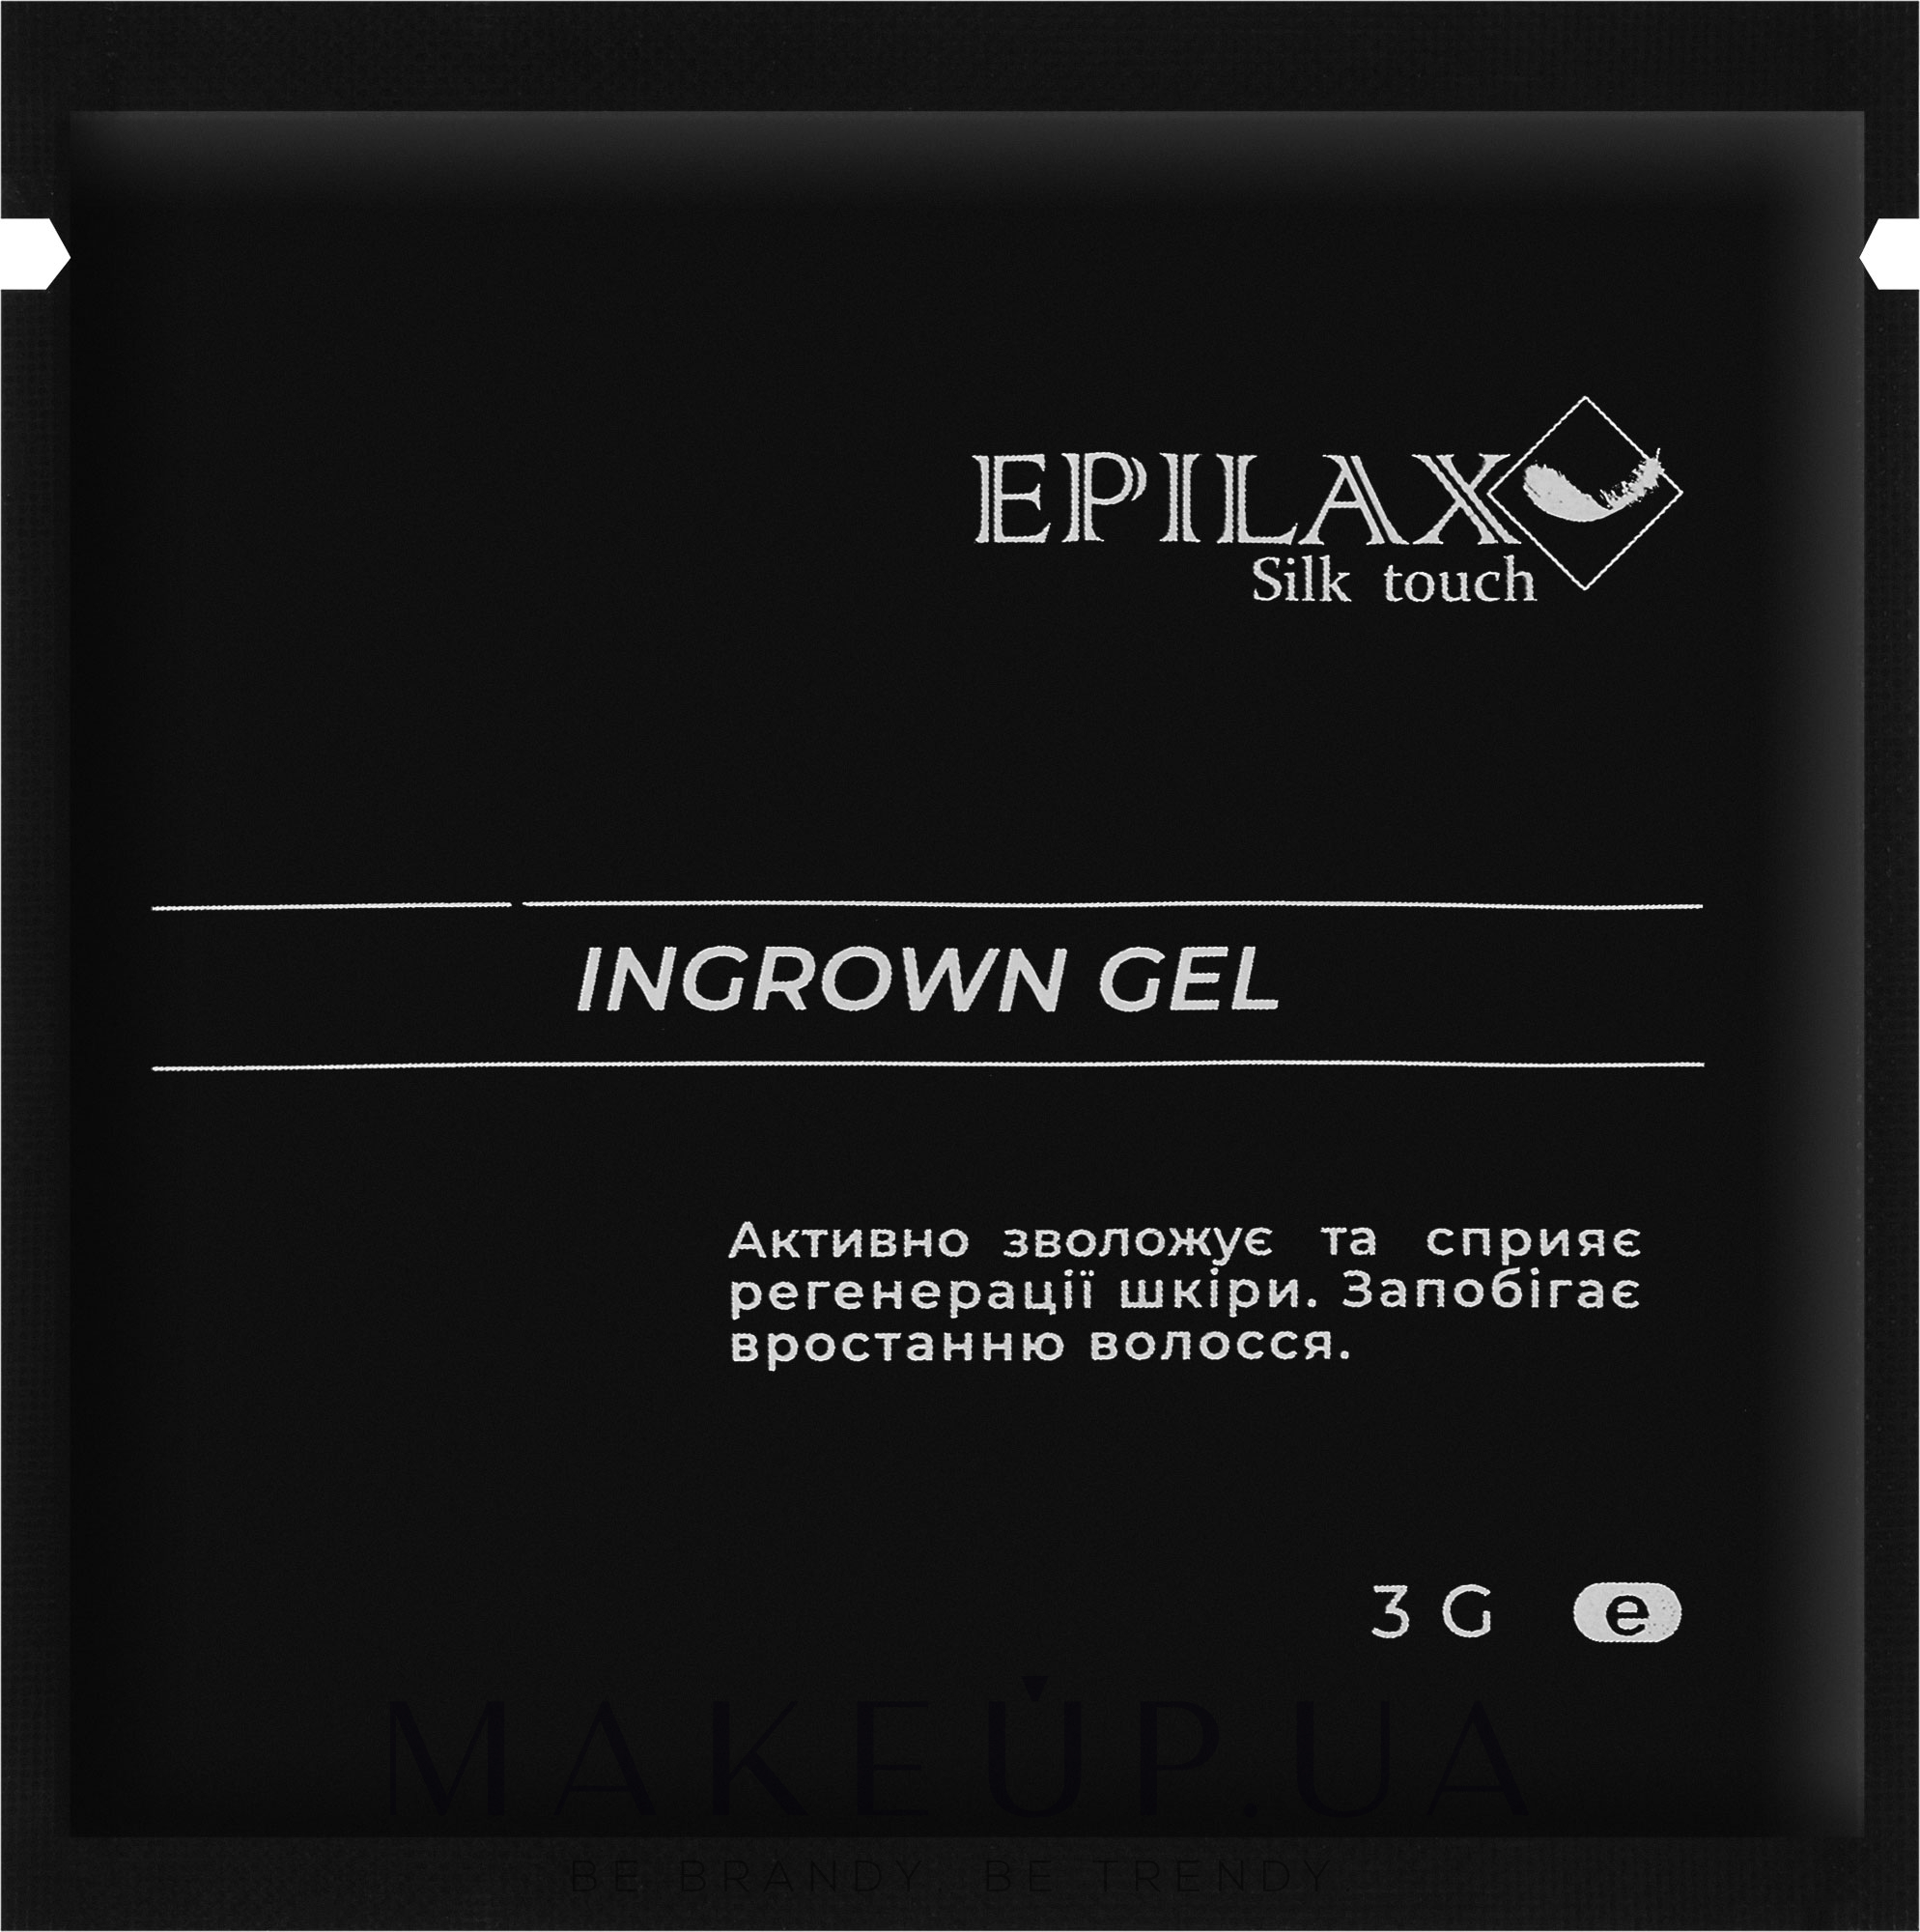 Гель від врослого волосся - Epilax Silk Touch Ingrown Gel (пробник) — фото 5g